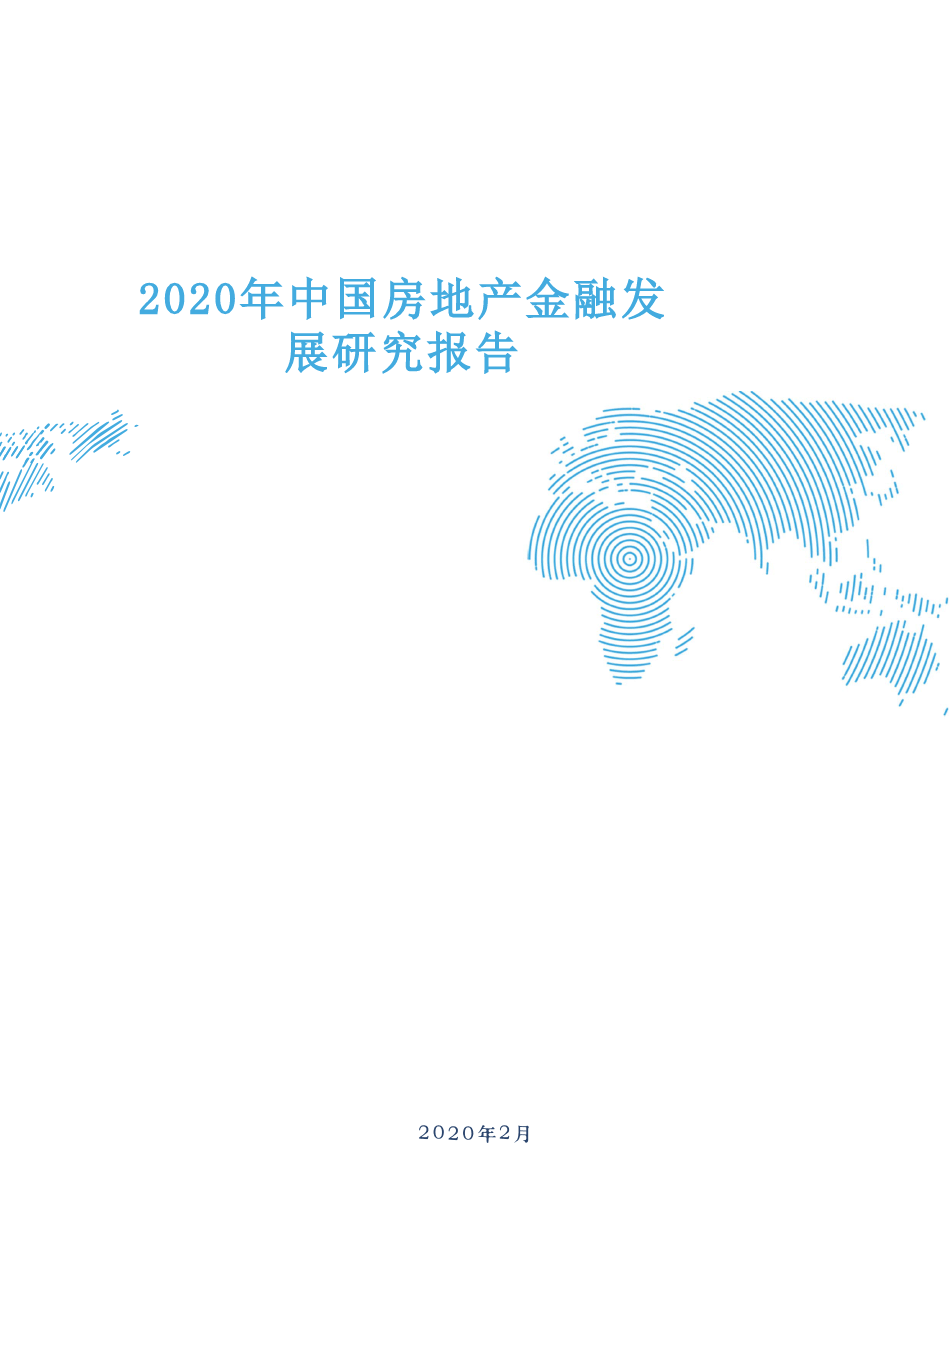 2020年中国房地产金融发展研究报告